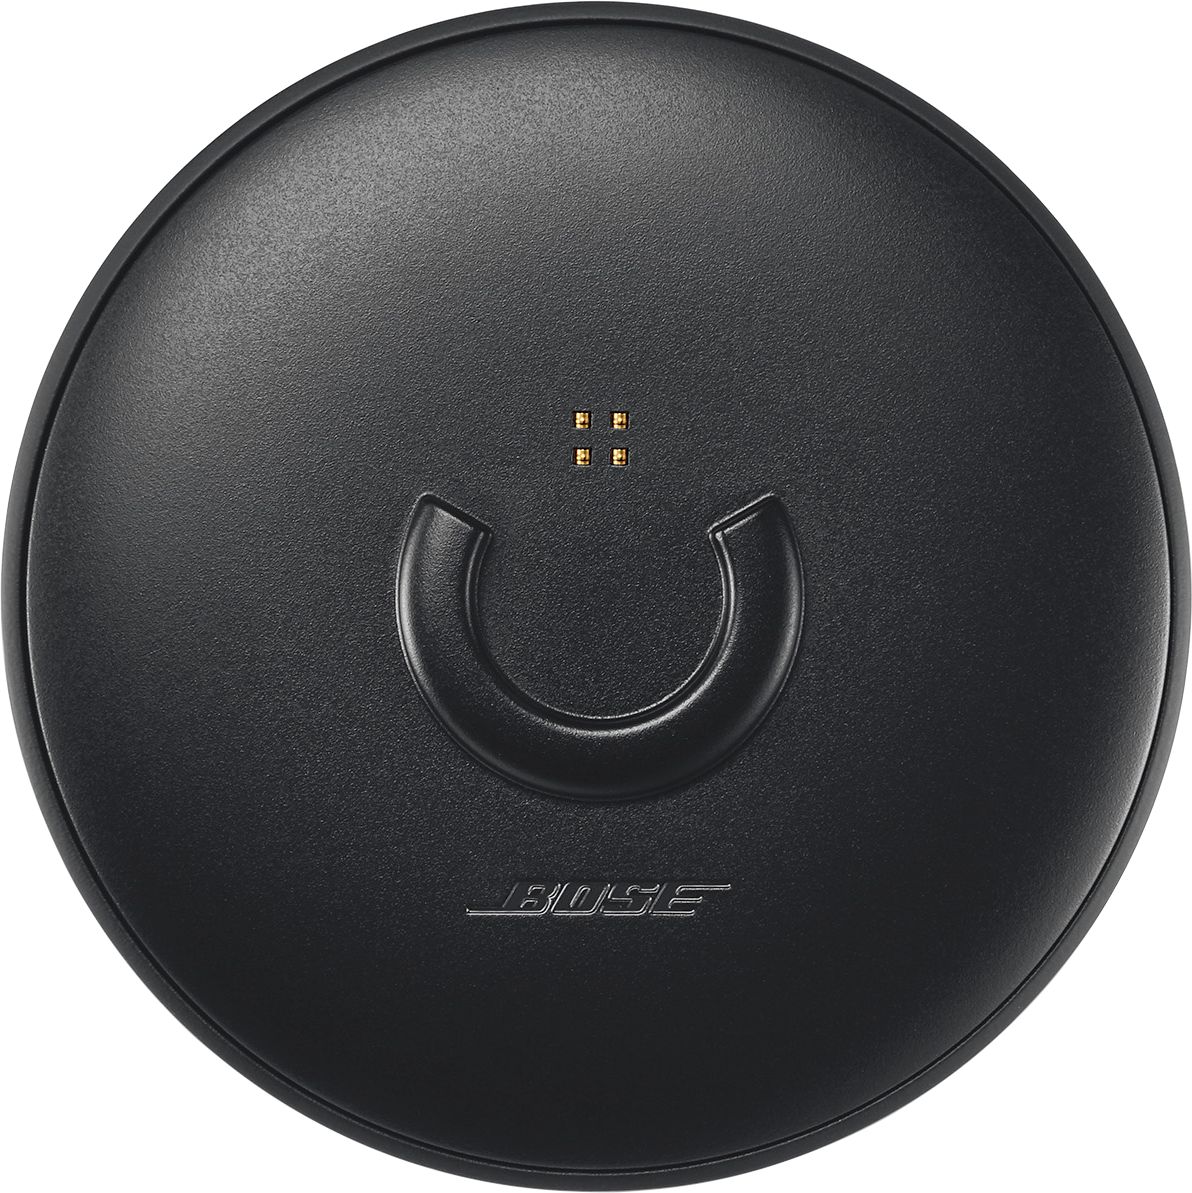 Bose SoundLink Revolve Portable Speaker Charging Dock Black 782298